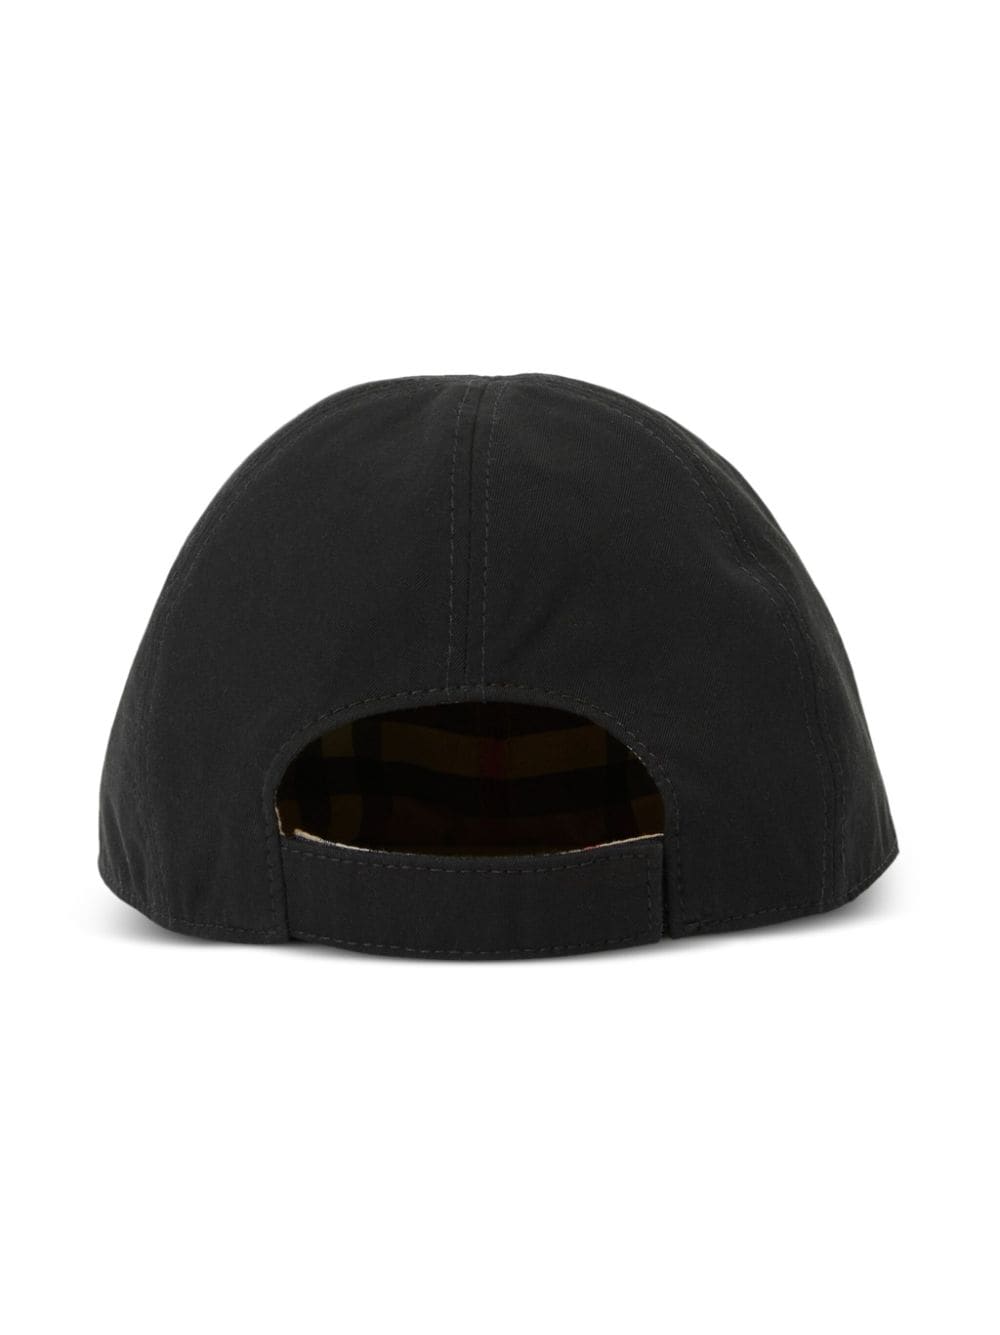 Black baseball cap for boys